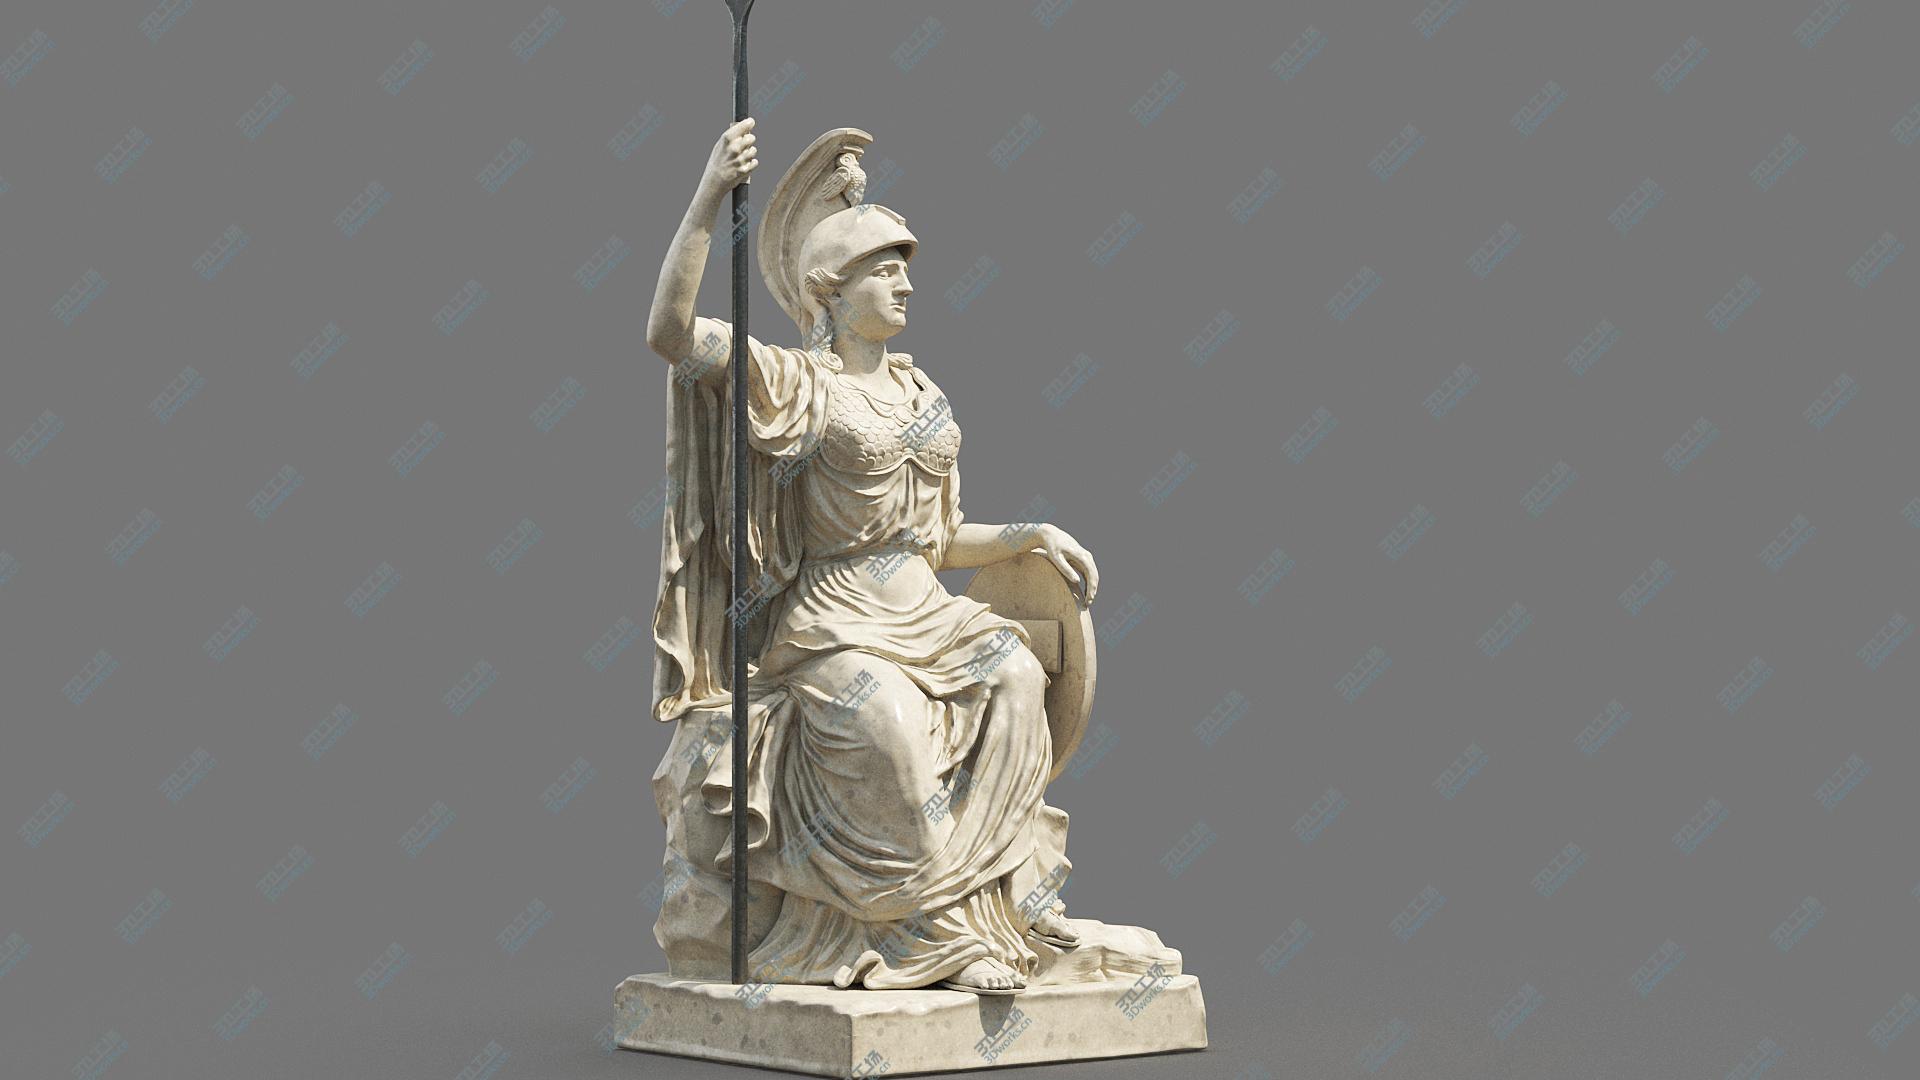 images/goods_img/202104094/Minerva Statue 3D model/3.jpg